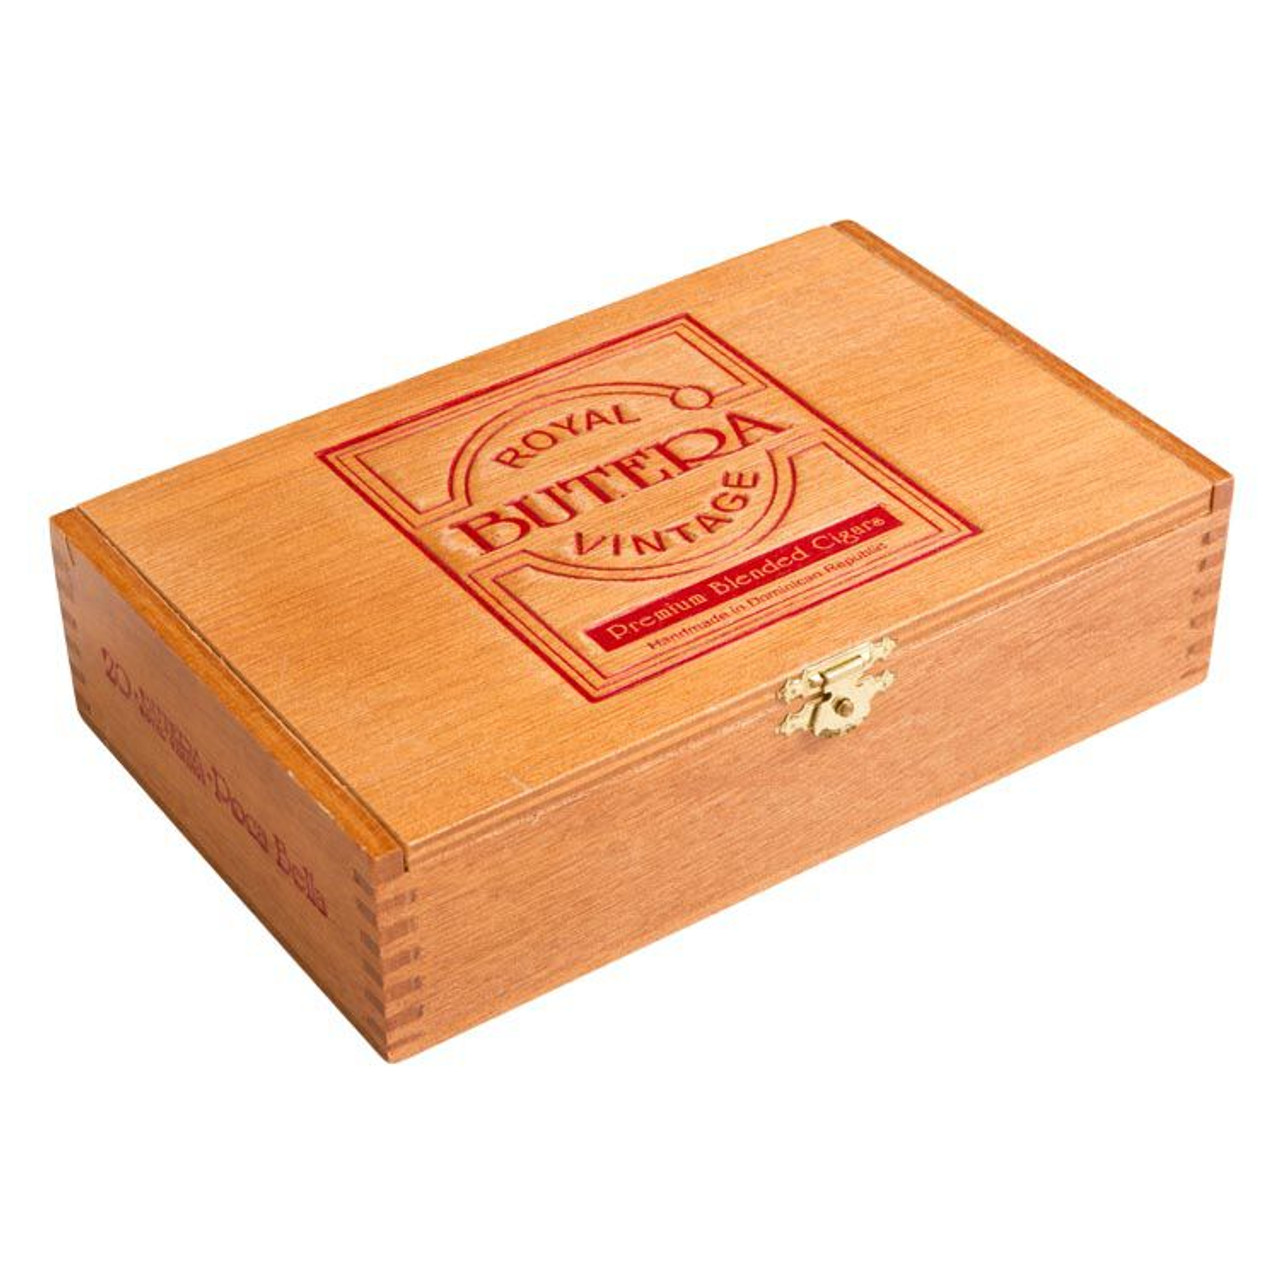 Butera Royal Vintage Fumo Dolce Cigars - 5.5 x 44 (Box of 20) *Box